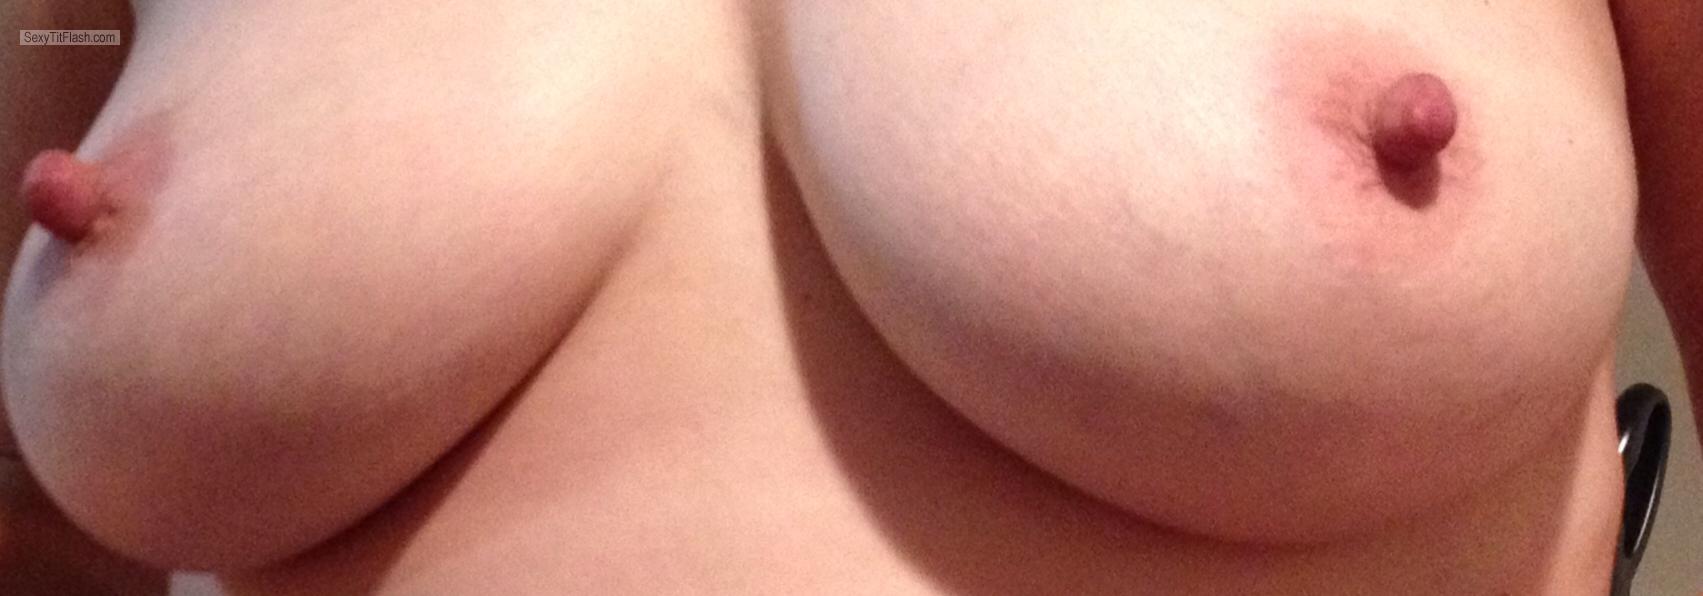 My Big Tits Topless Reelnice